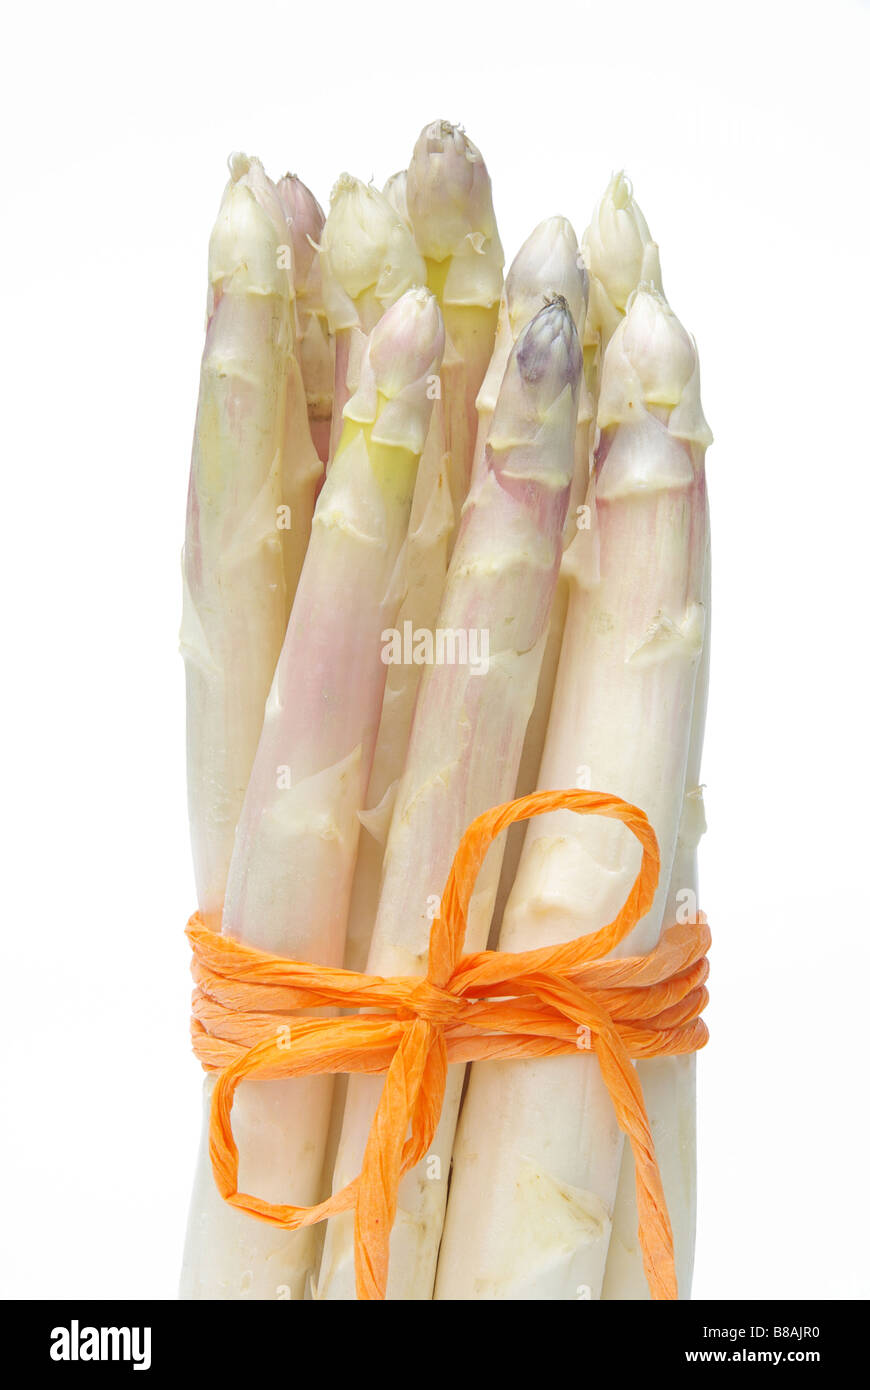 Spargel asparagus 02 Stock Photo